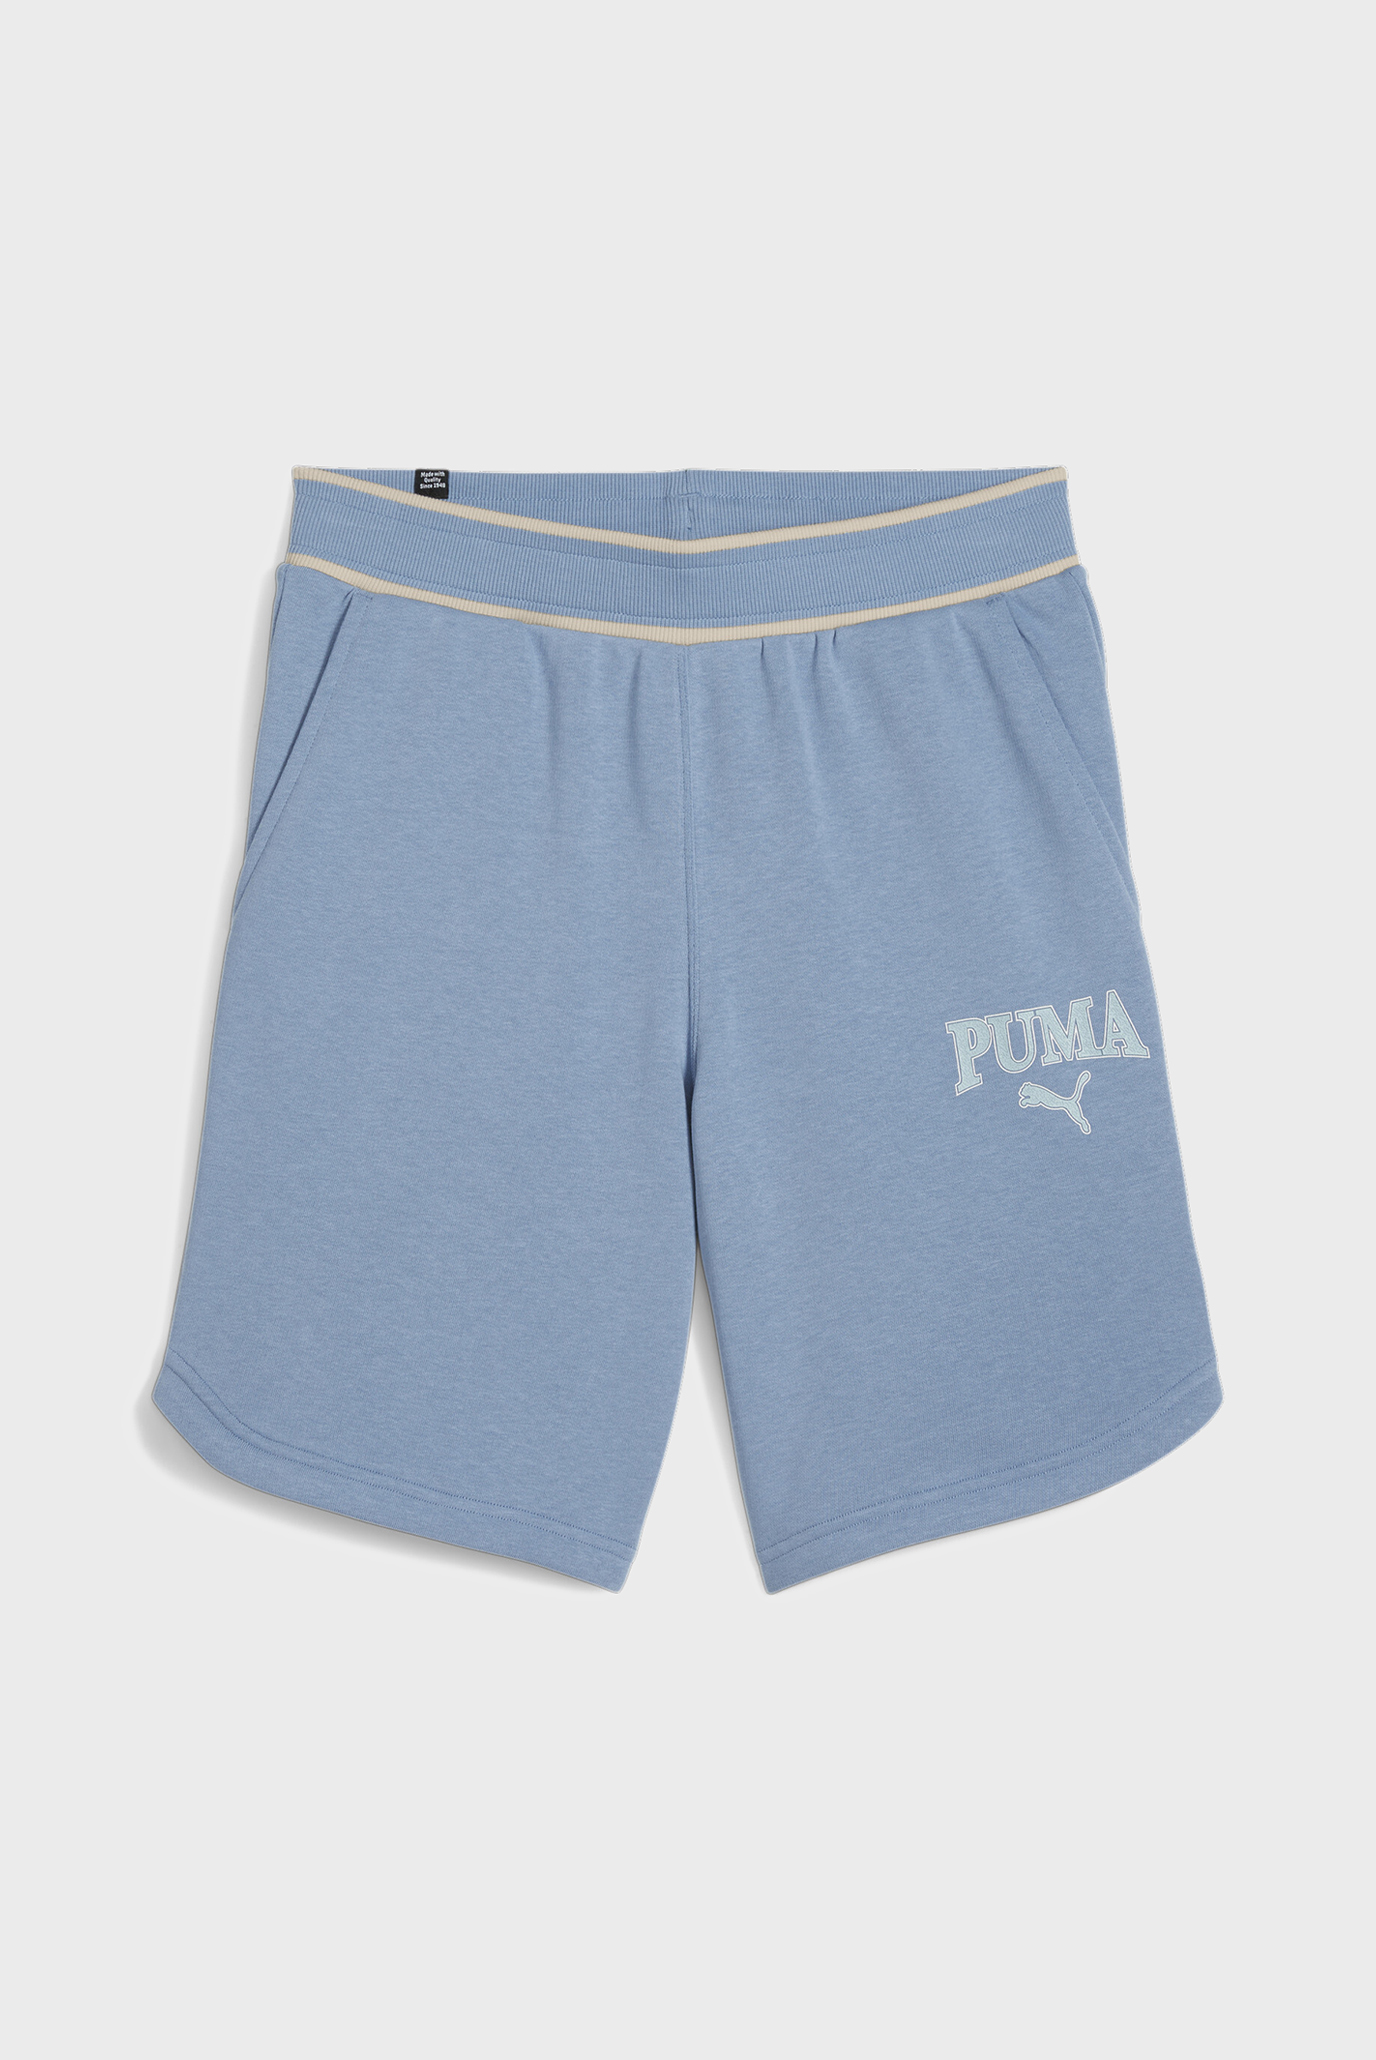 Чоловічі блакитні шорти PUMA SQUAD Shorts 1